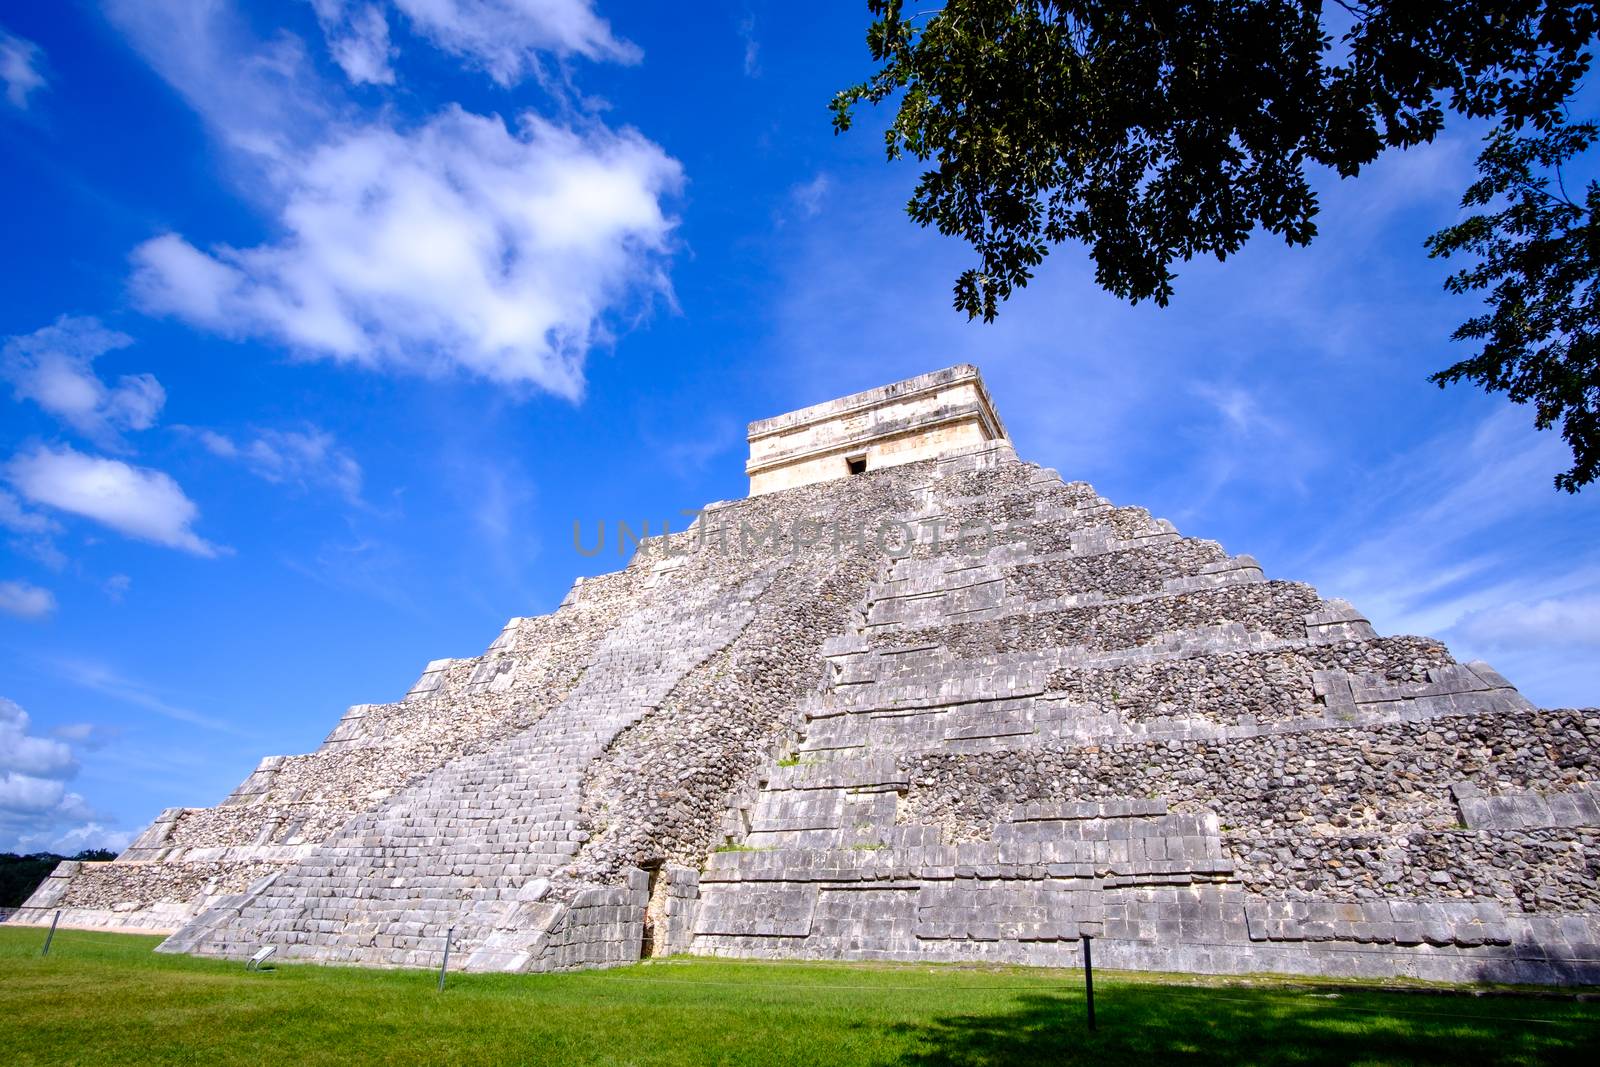 Scenic view of Mayan pyramid El Castillo in Chichen Itza, Mexico